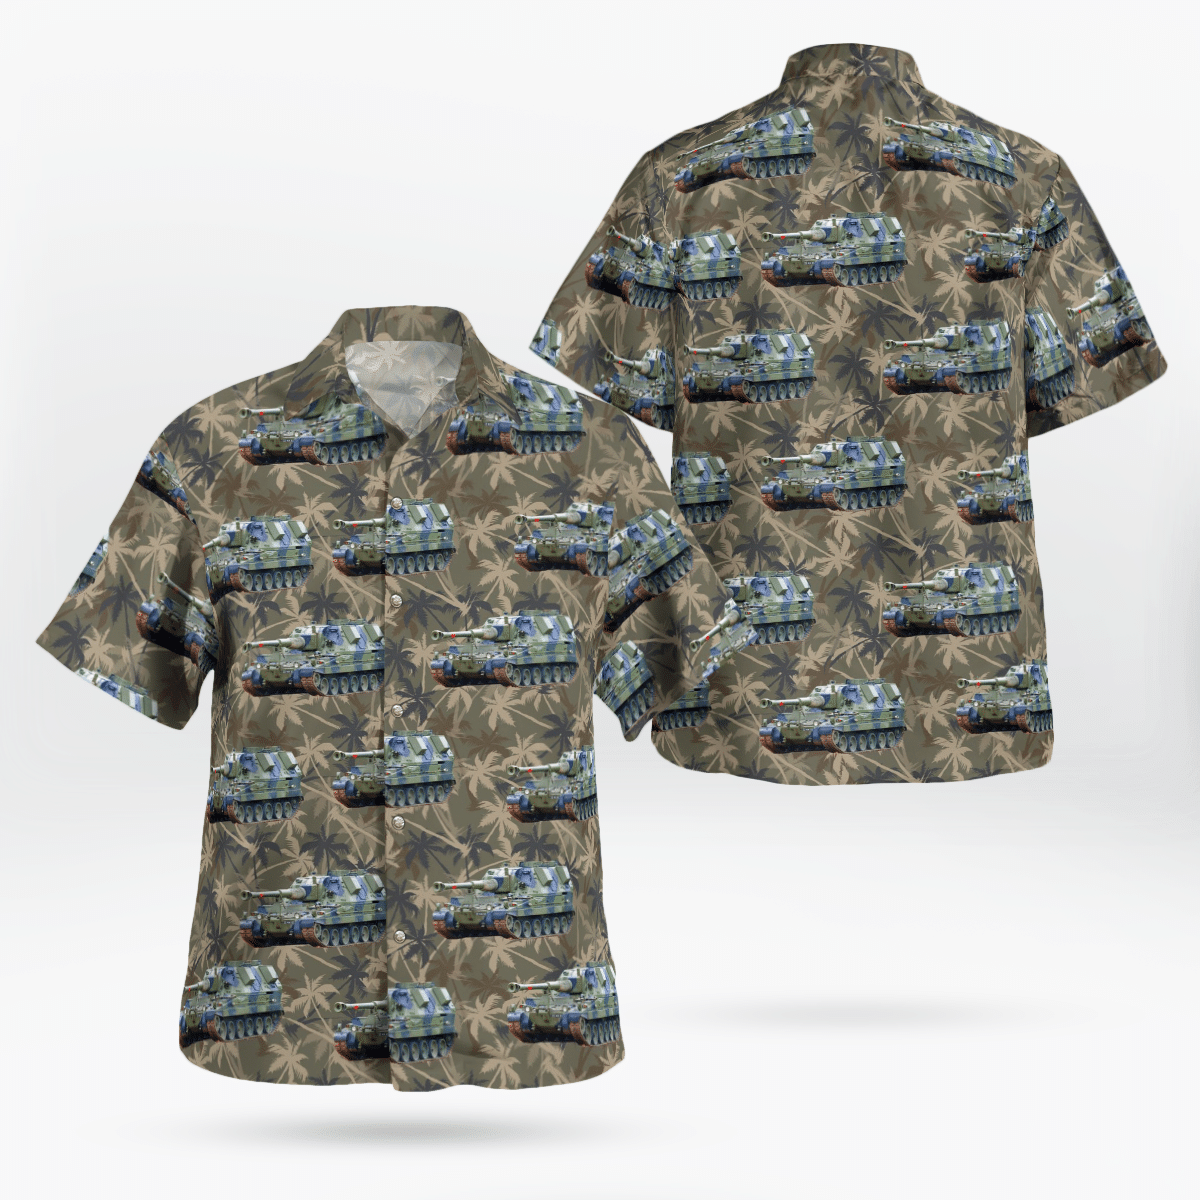 You won't regret buying these Aloha Shirt 64